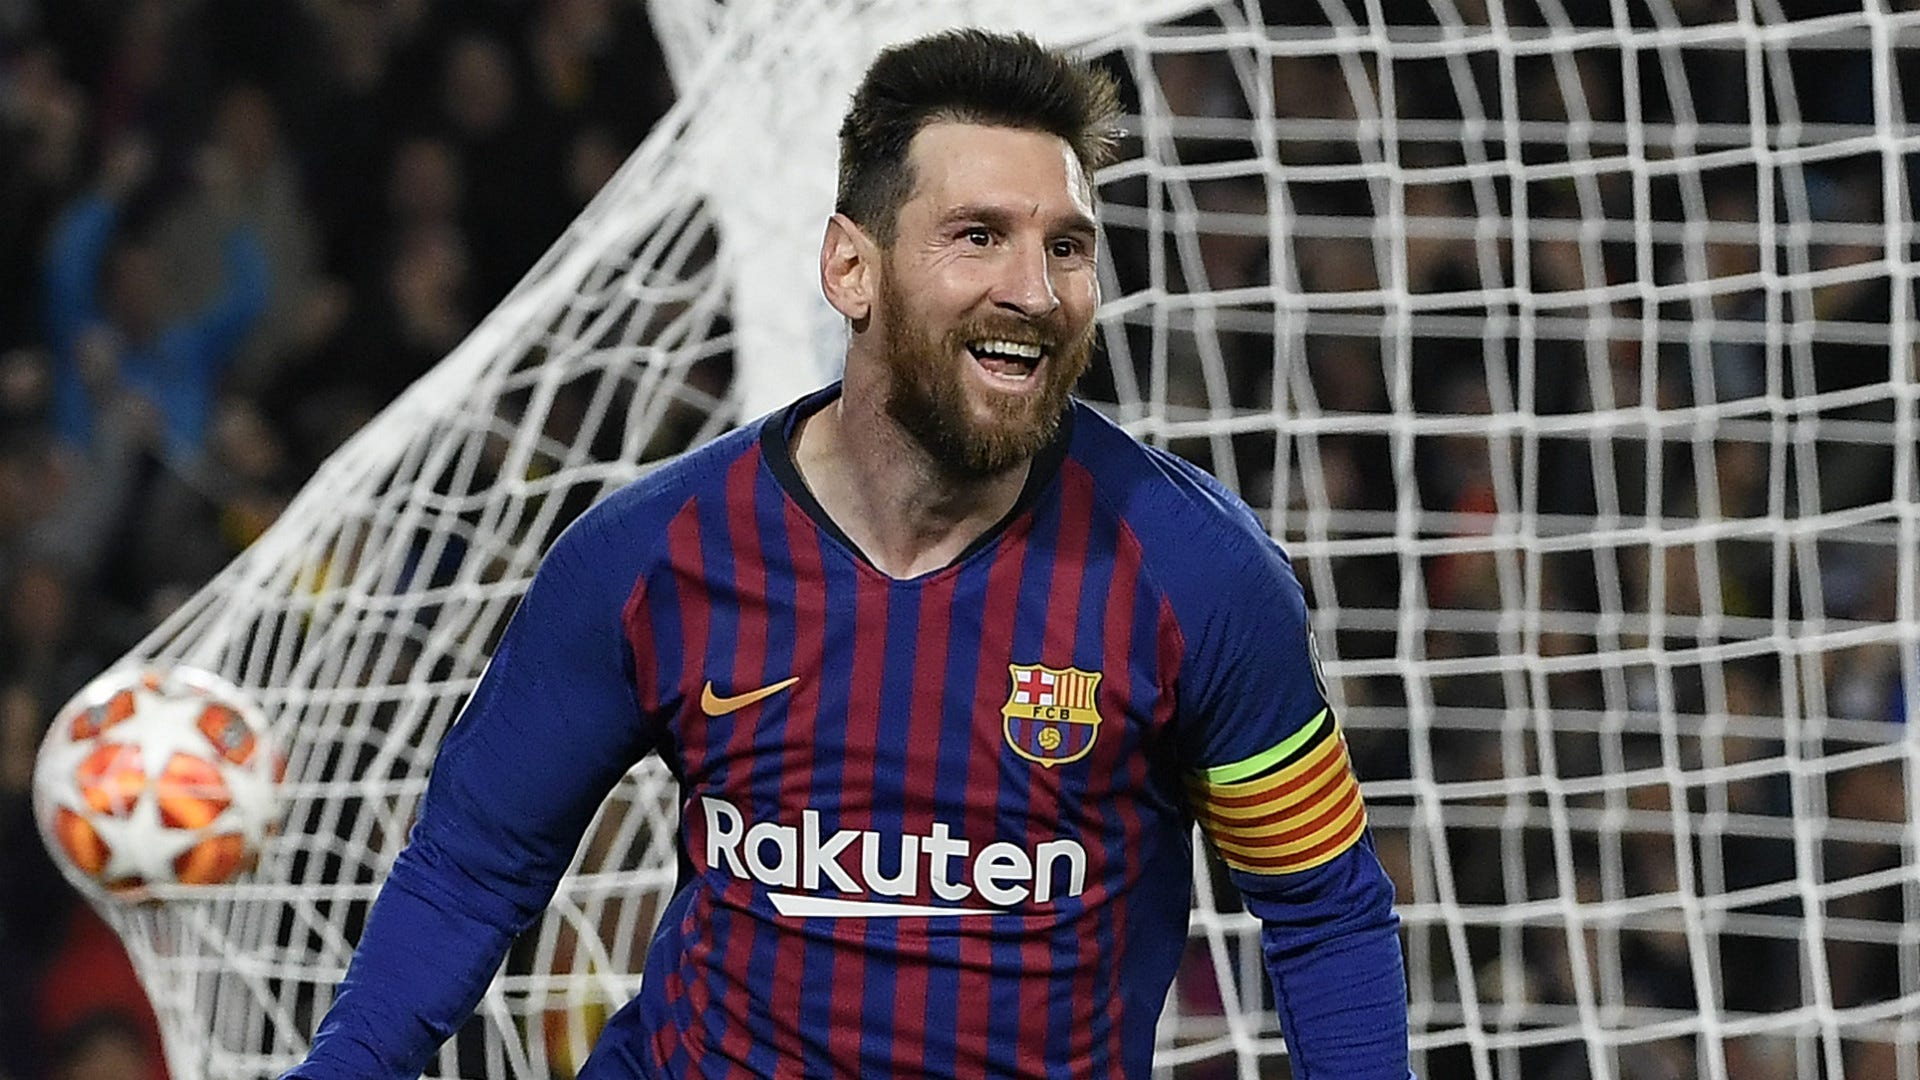 Không thể bỏ qua kỷ lục ghi bàn của Messi tại Champions League, nơi anh ta đã ghi vào lưới các đội bóng hàng đầu thế giới. Với khả năng hung hăng và tinh thần đấu tranh không ngừng, Messi đã khiến cho các đối thủ phải dè chừng và tôn trọng. Hãy xem những màn trình diễn tuyệt vời của Messi.